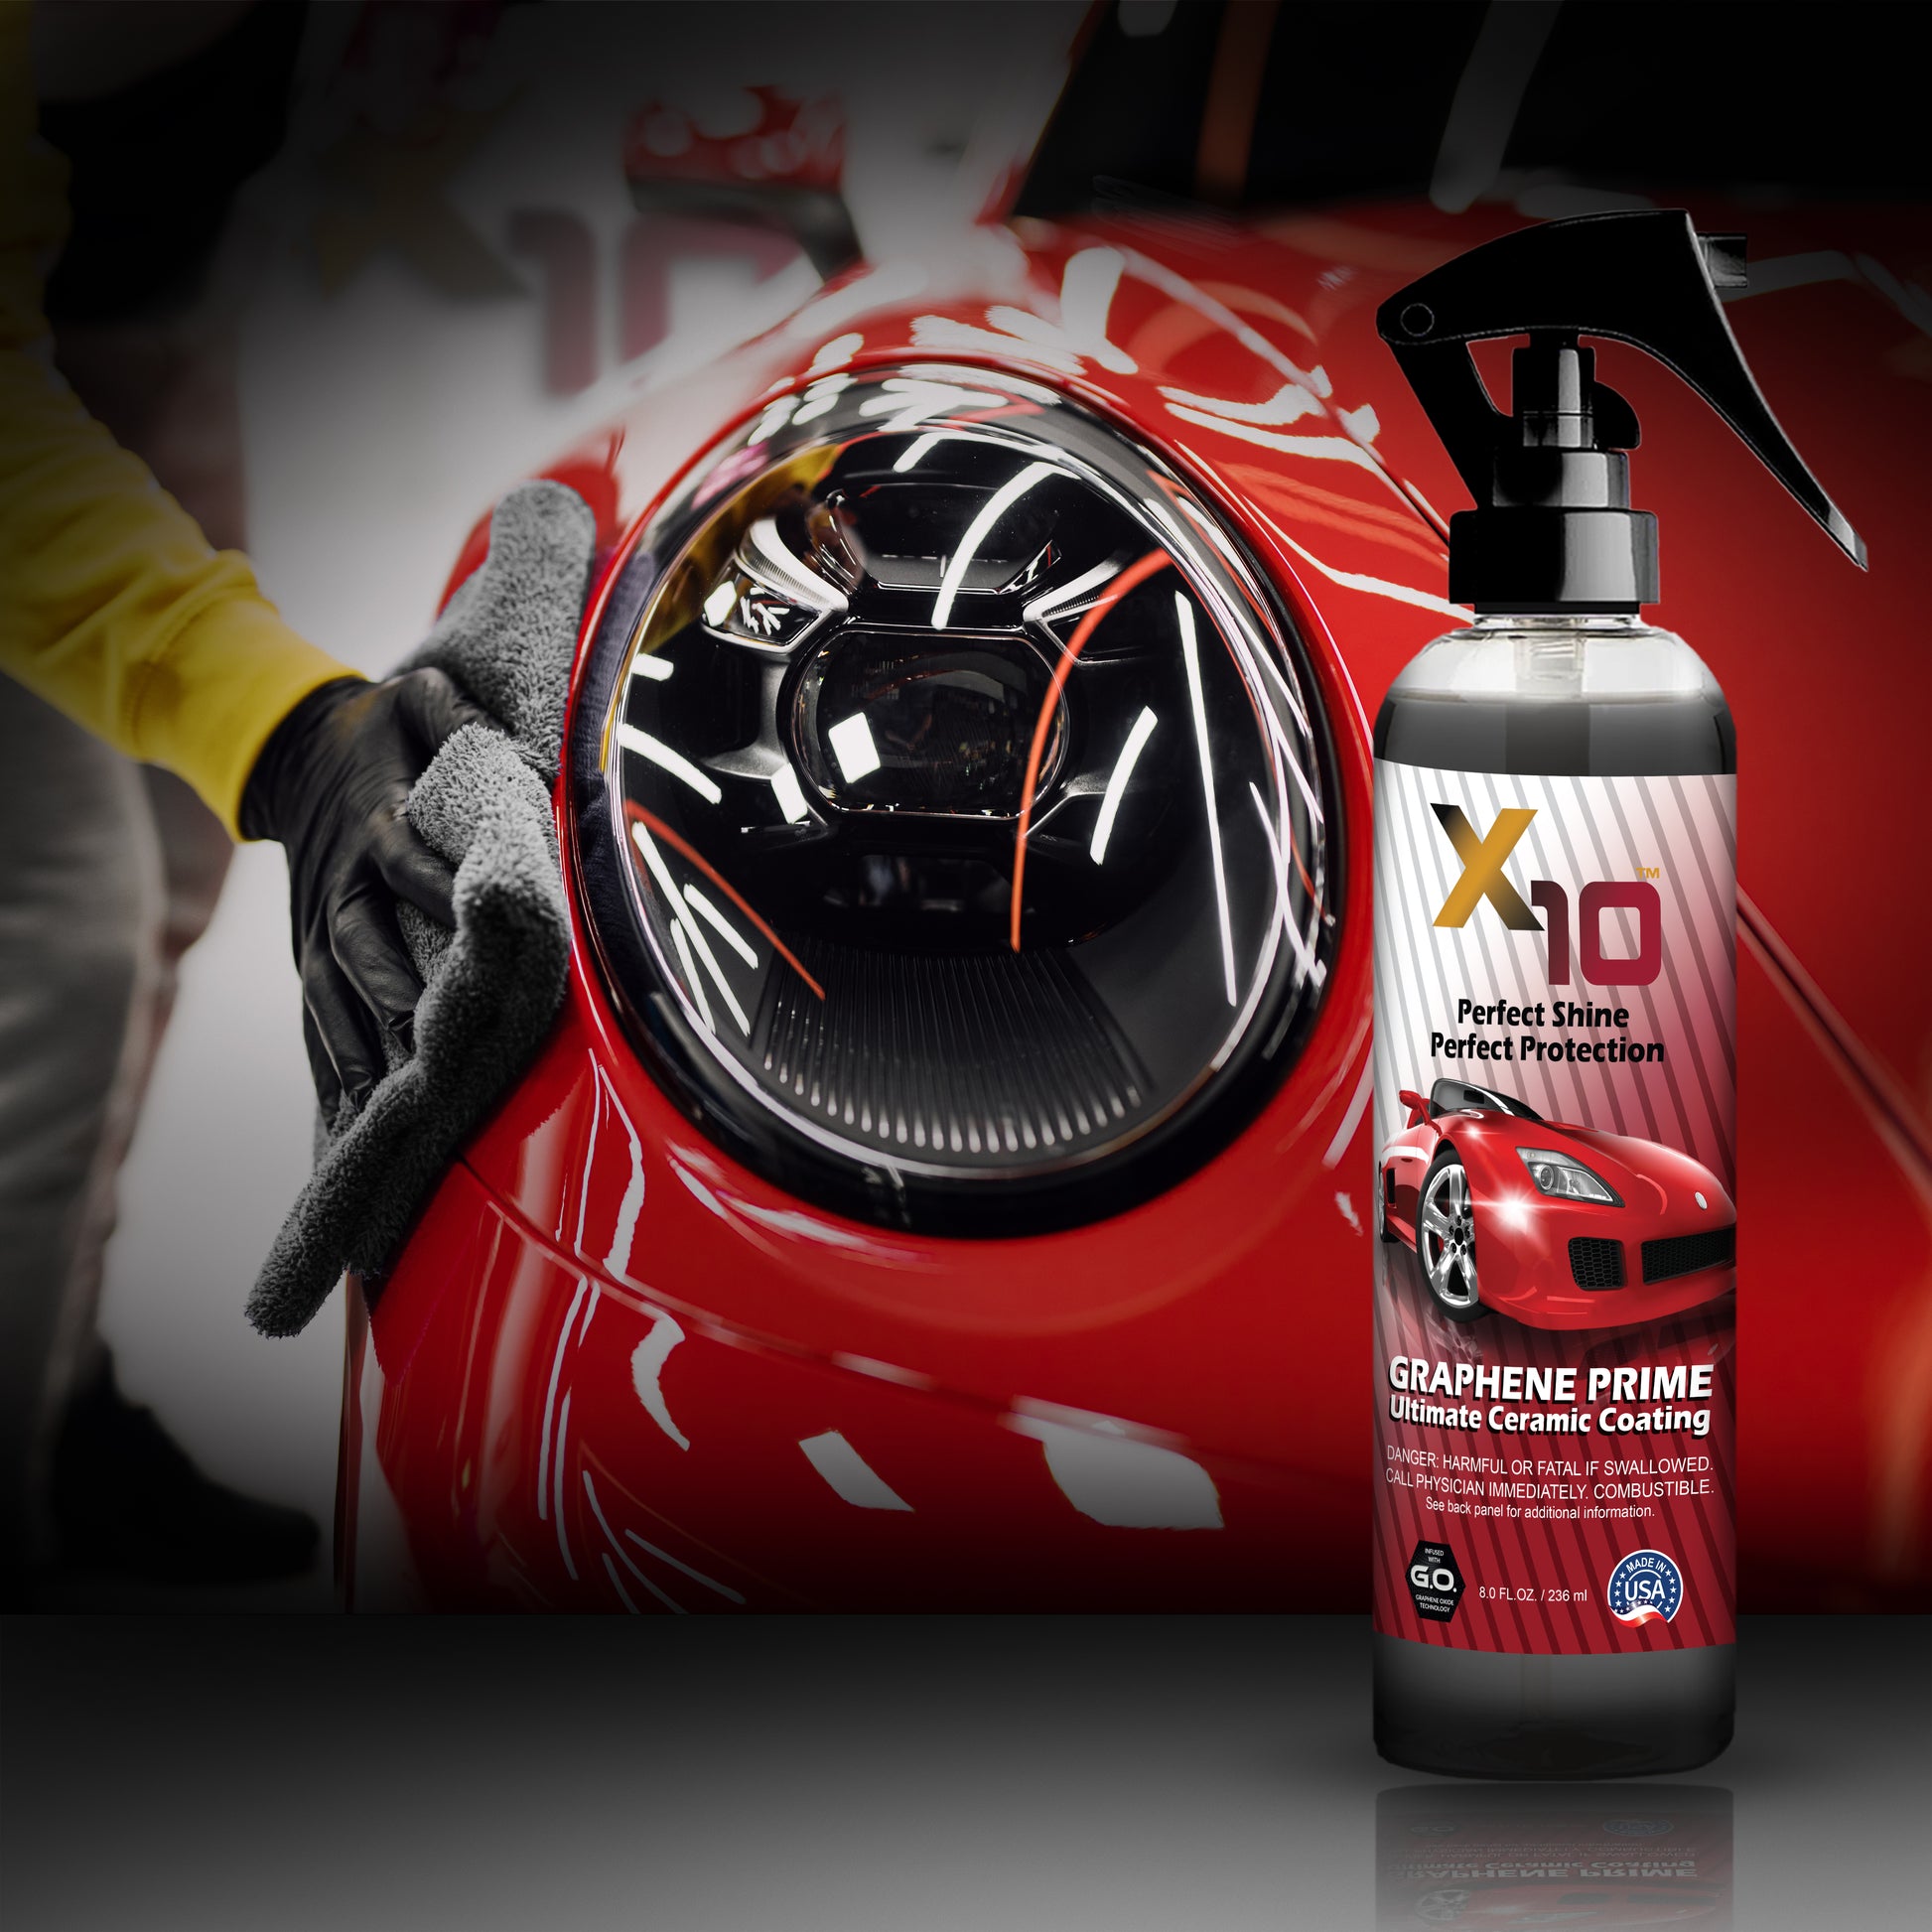 Graphene Ceramic Spray Coating™ Advanced – Prestige Car Care Shop